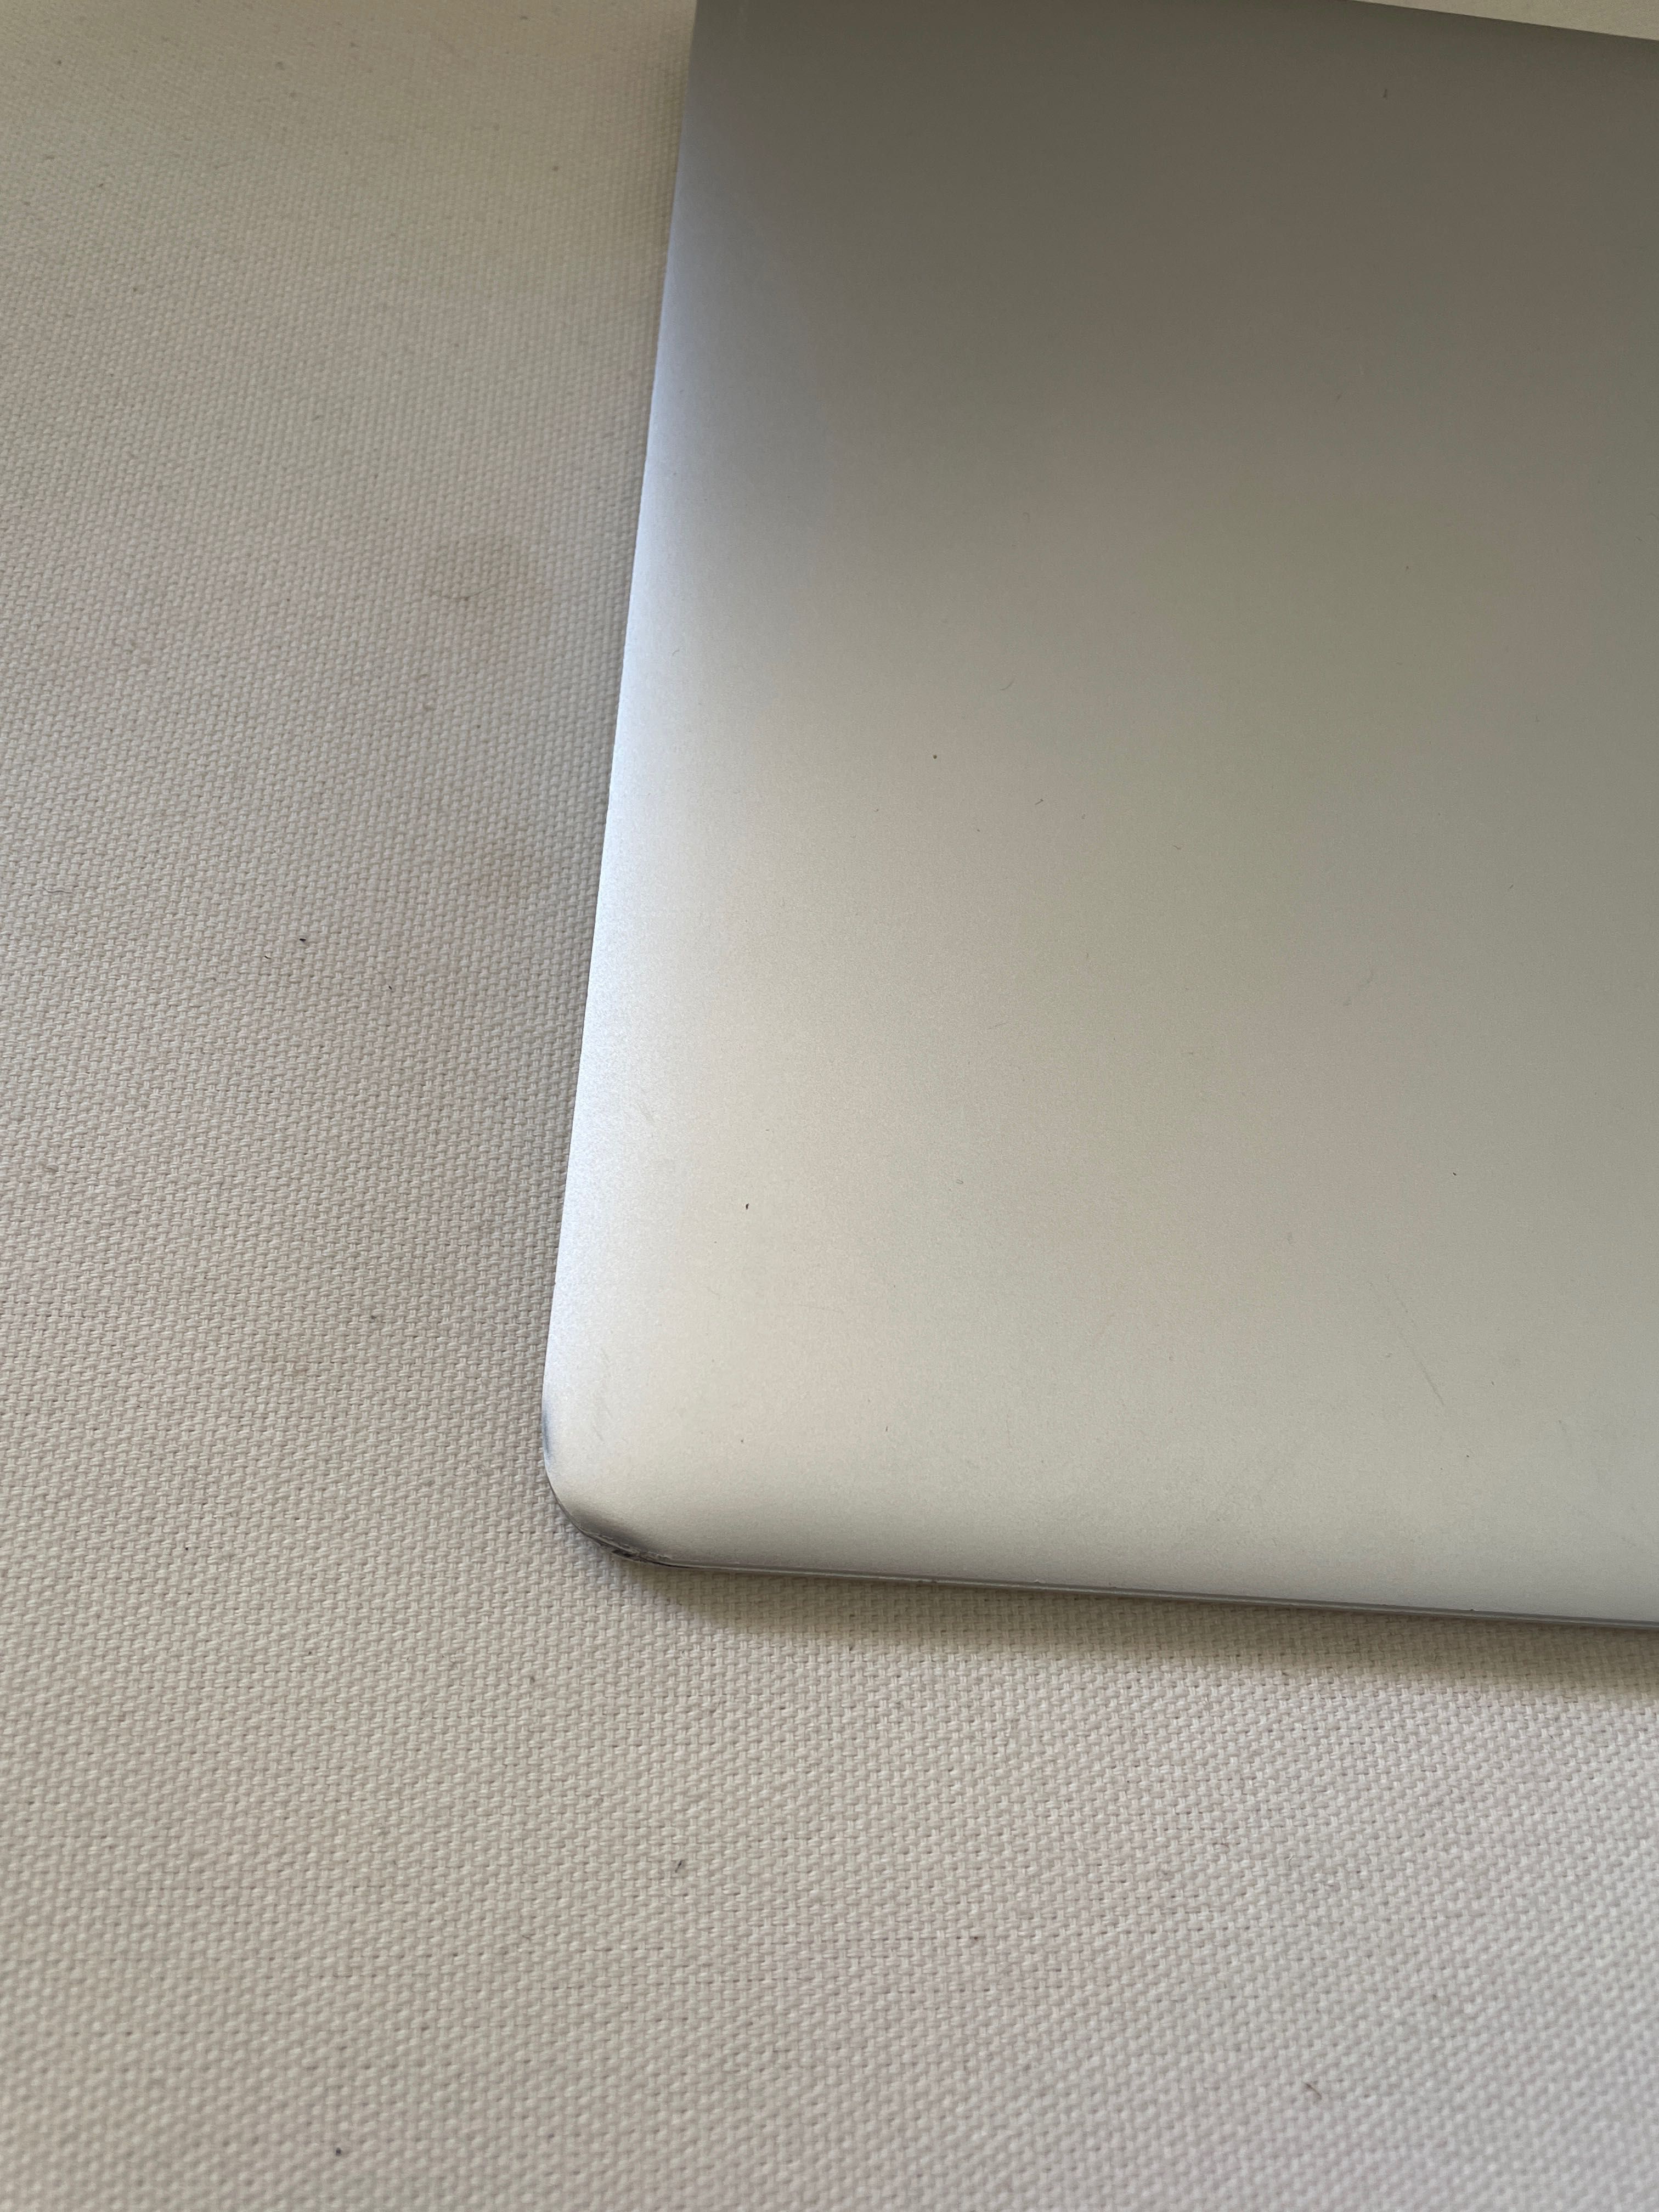 MacBook Air 13 polegadas (2013) 8GB de RAM e 256GB SSD